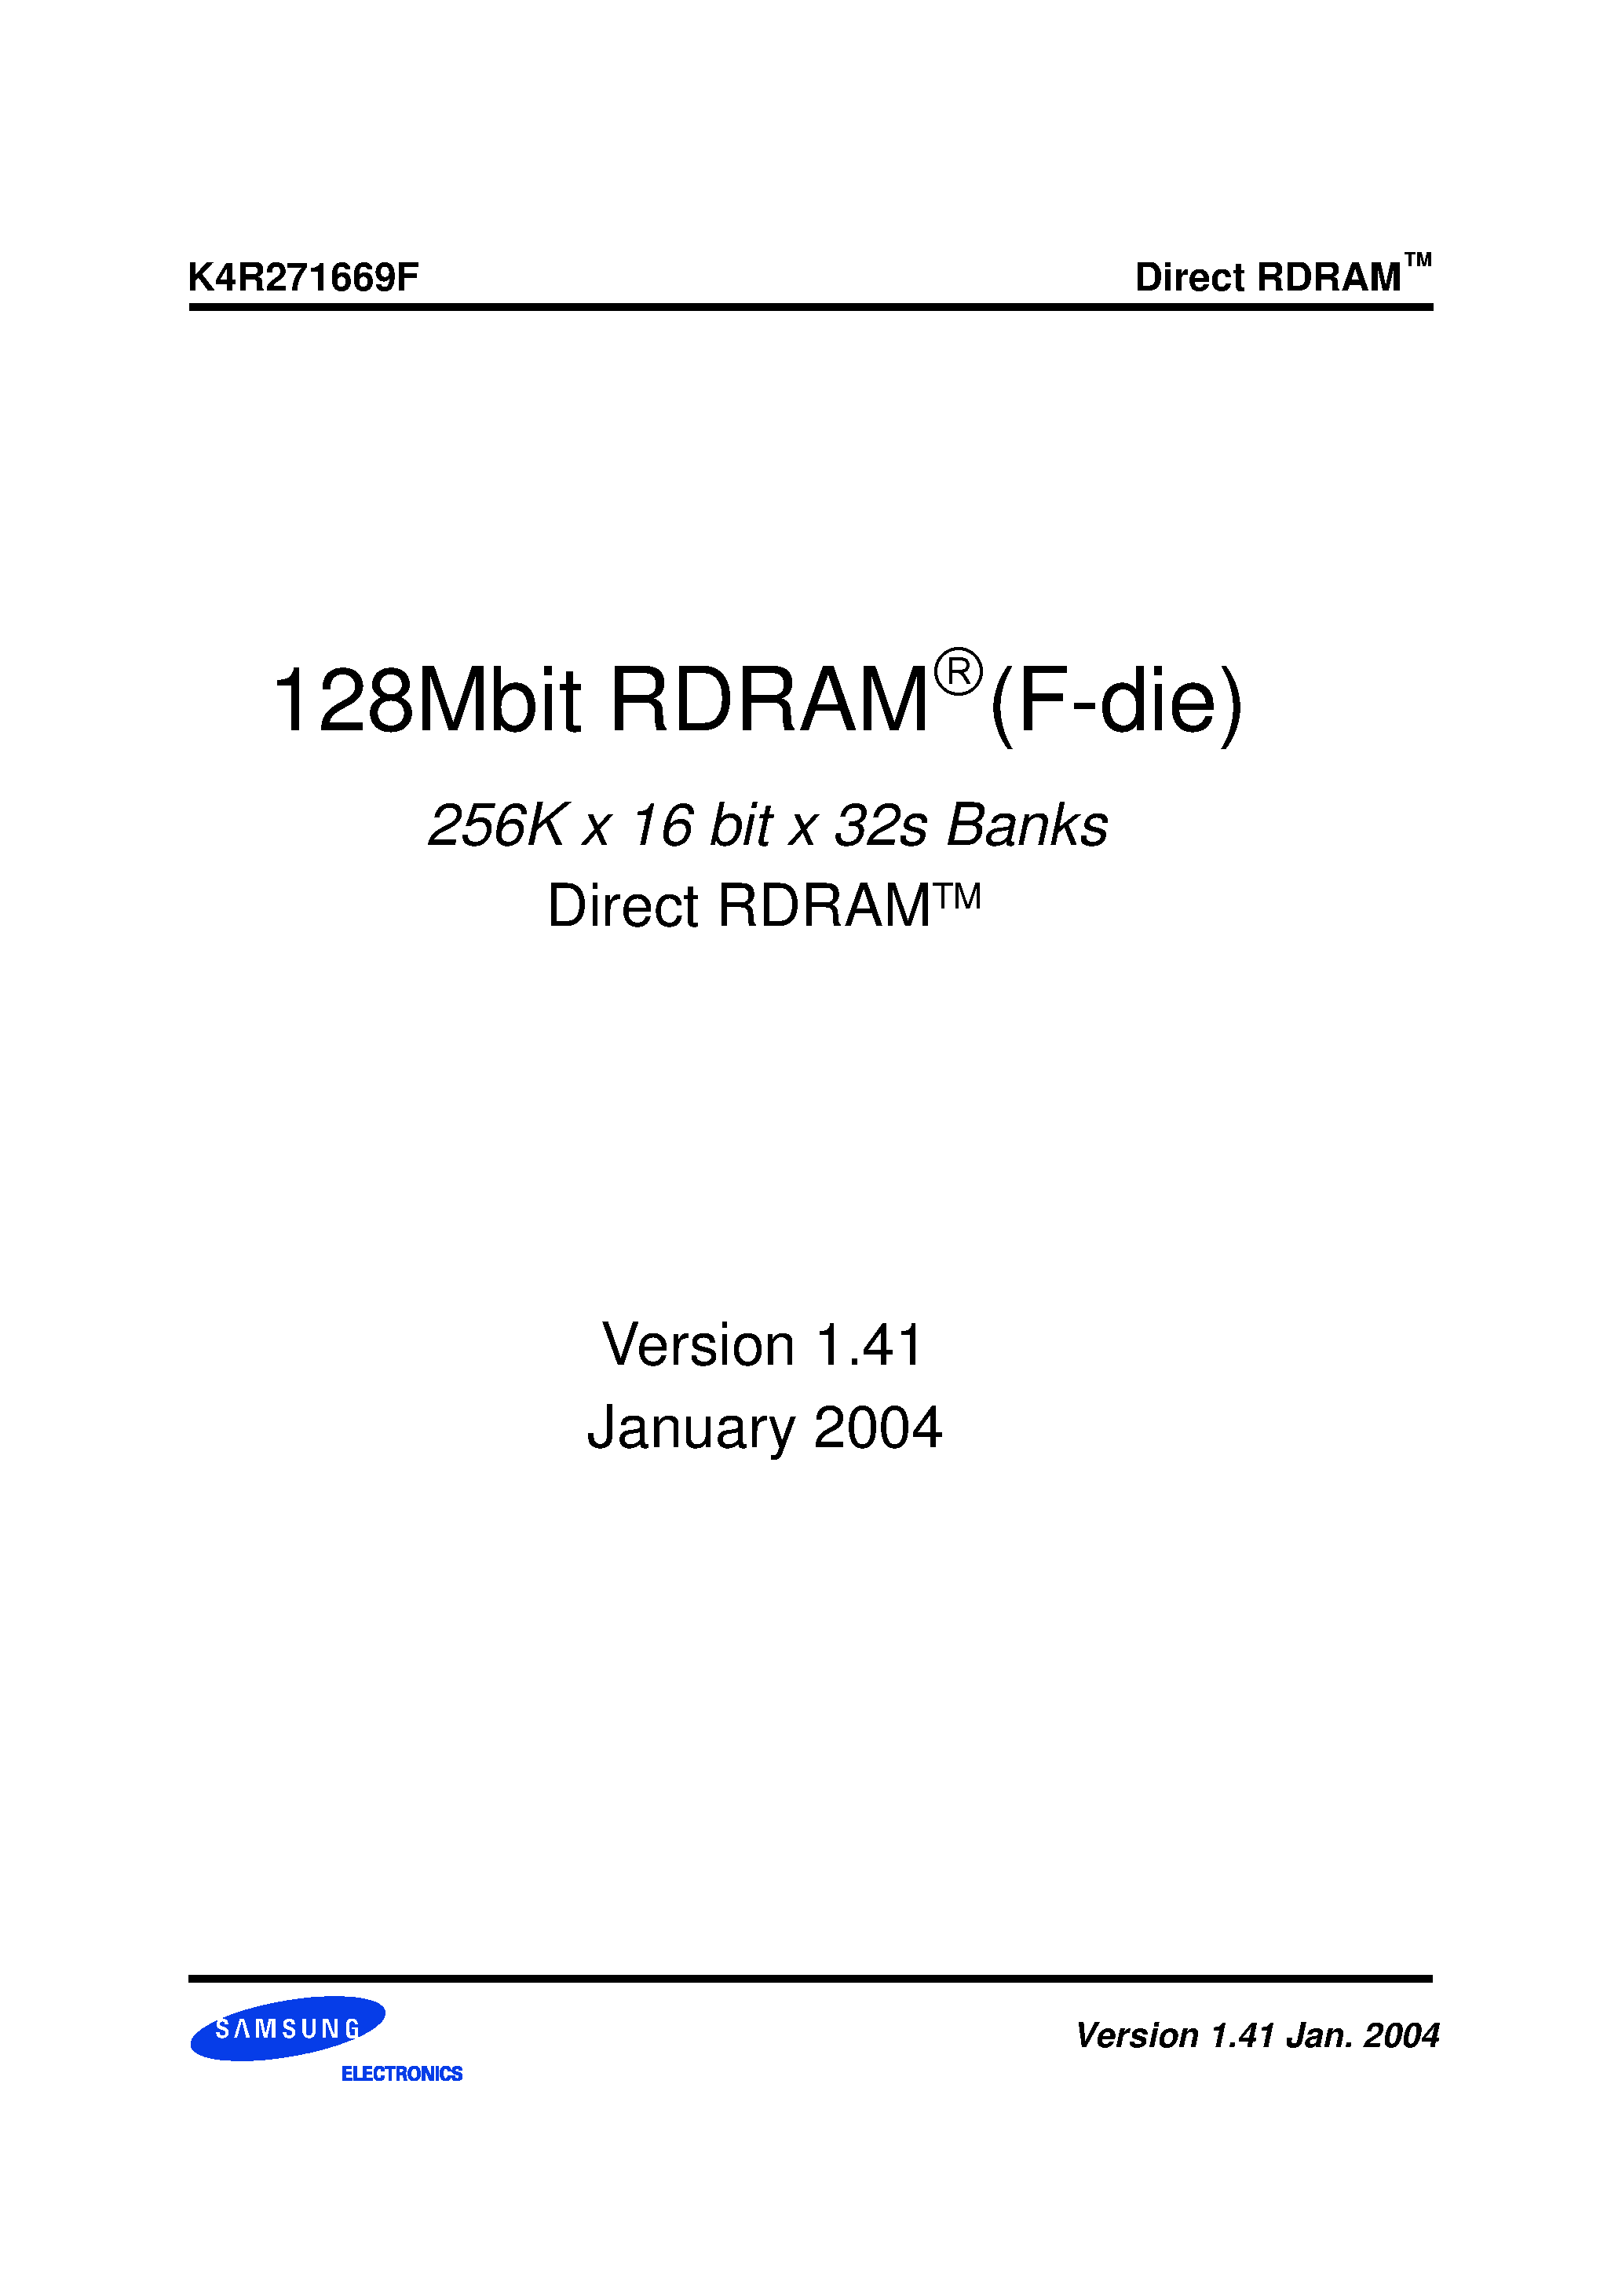 Даташит K4R271669F - 128Mbit RDRAM(F-die) страница 1